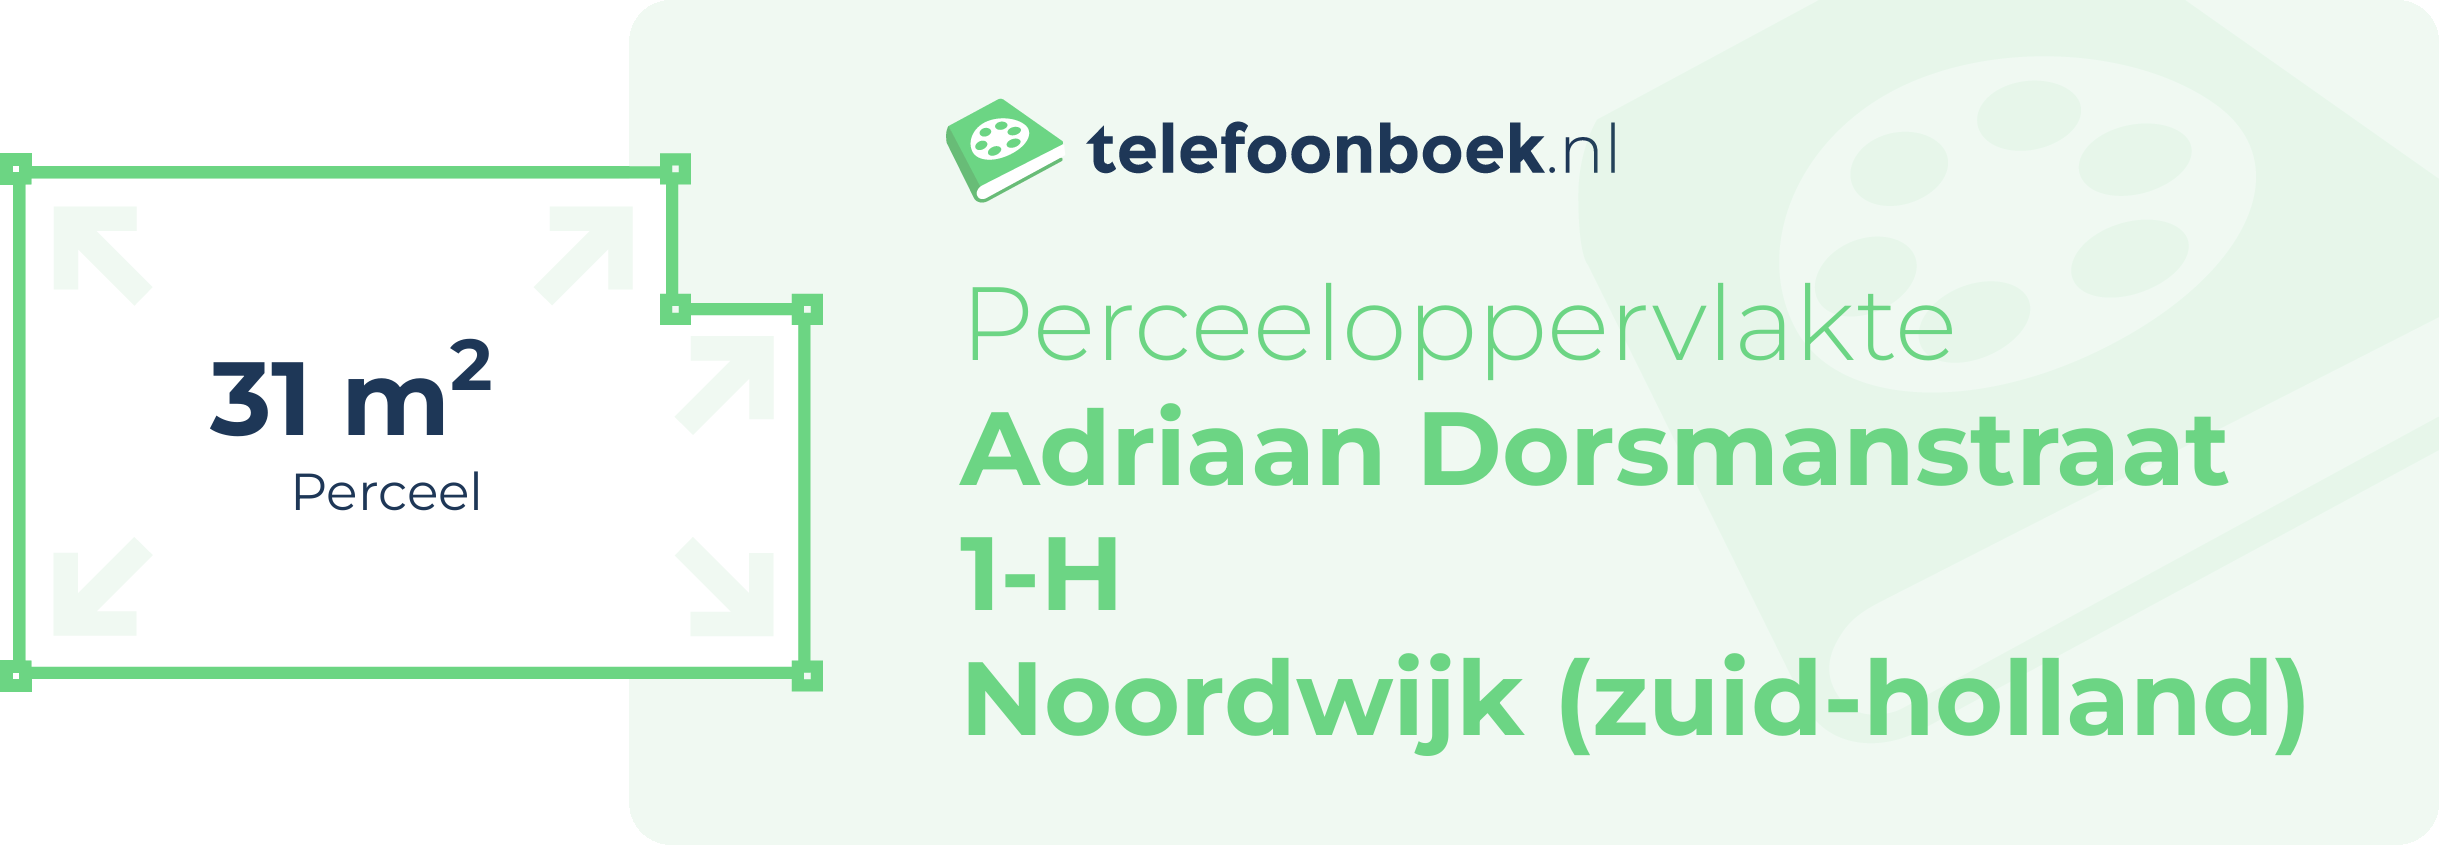 Perceeloppervlakte Adriaan Dorsmanstraat 1-H Noordwijk (Zuid-Holland)